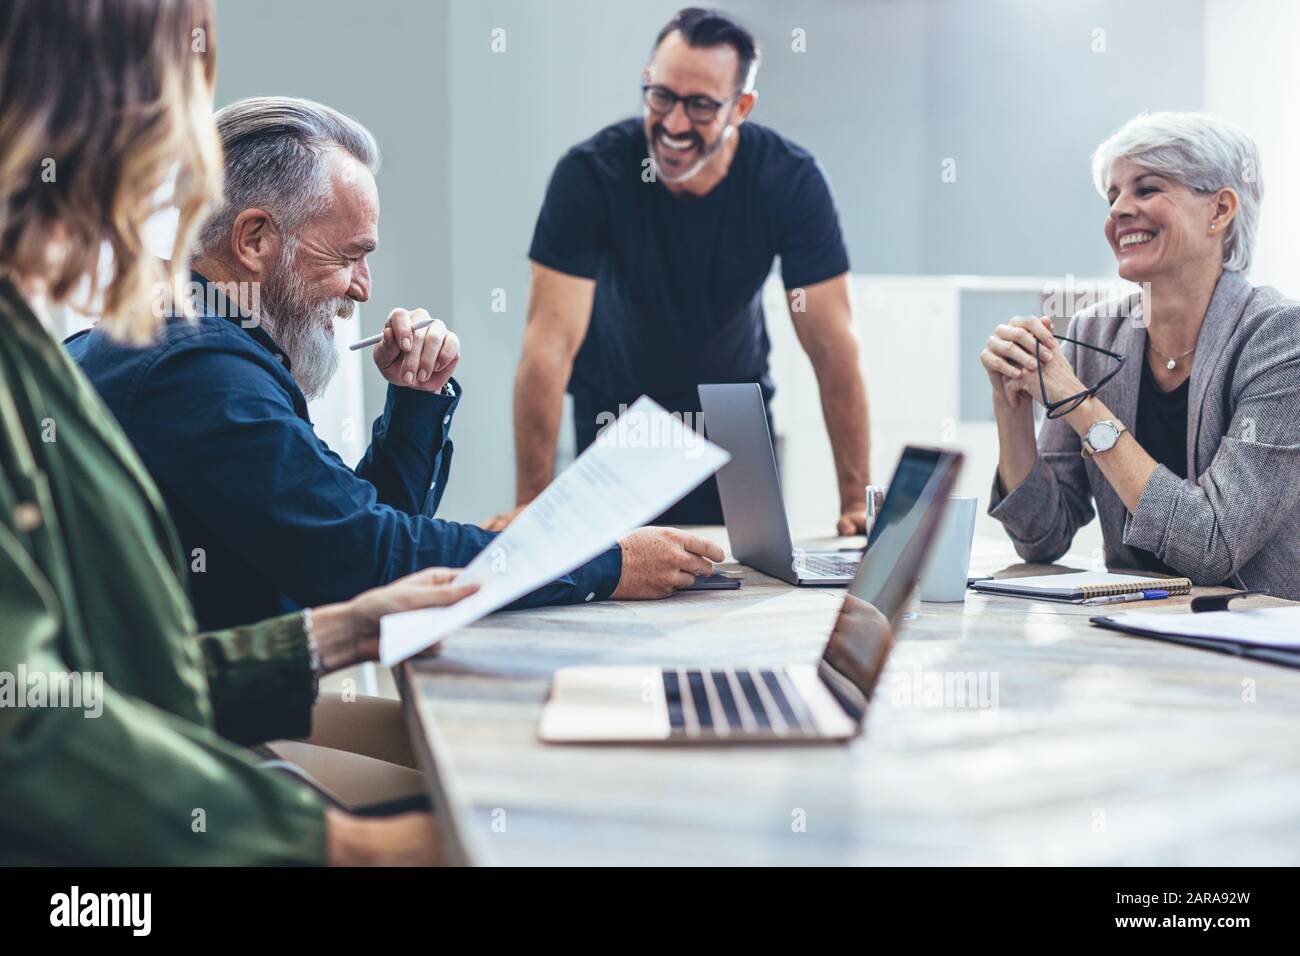 Equipo de profesionales corporativos que se reúnen en un nuevo proyecto. Gente de negocios sonriendo durante una reunión en la sala de conferencias. Foto de stock